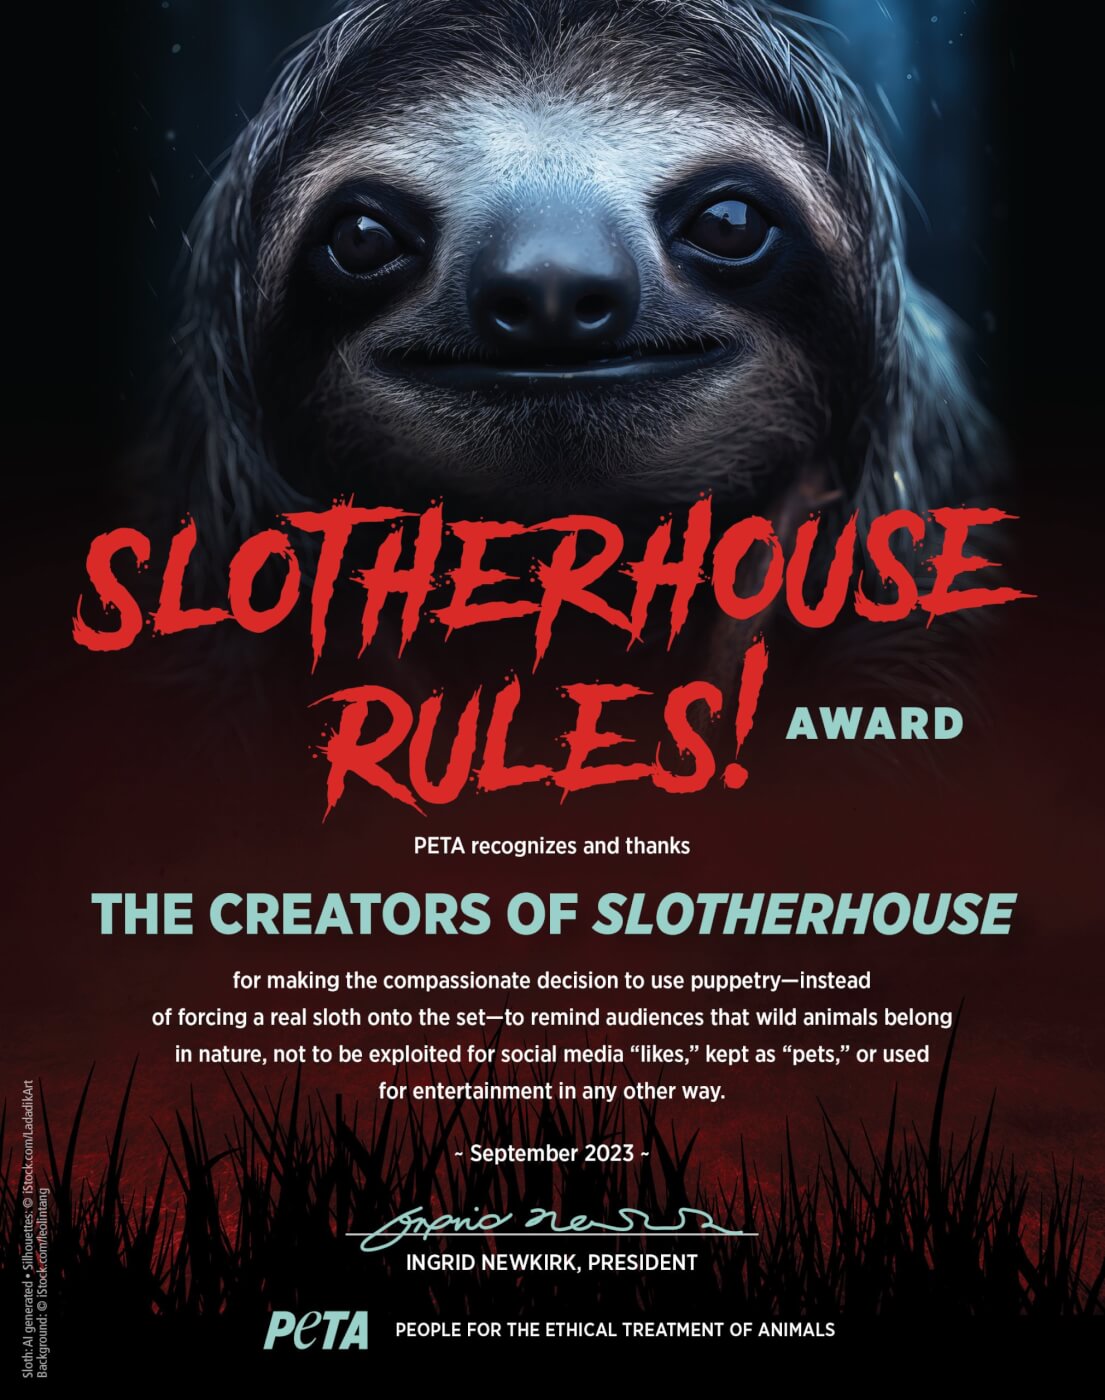 Slotherhouse rules award